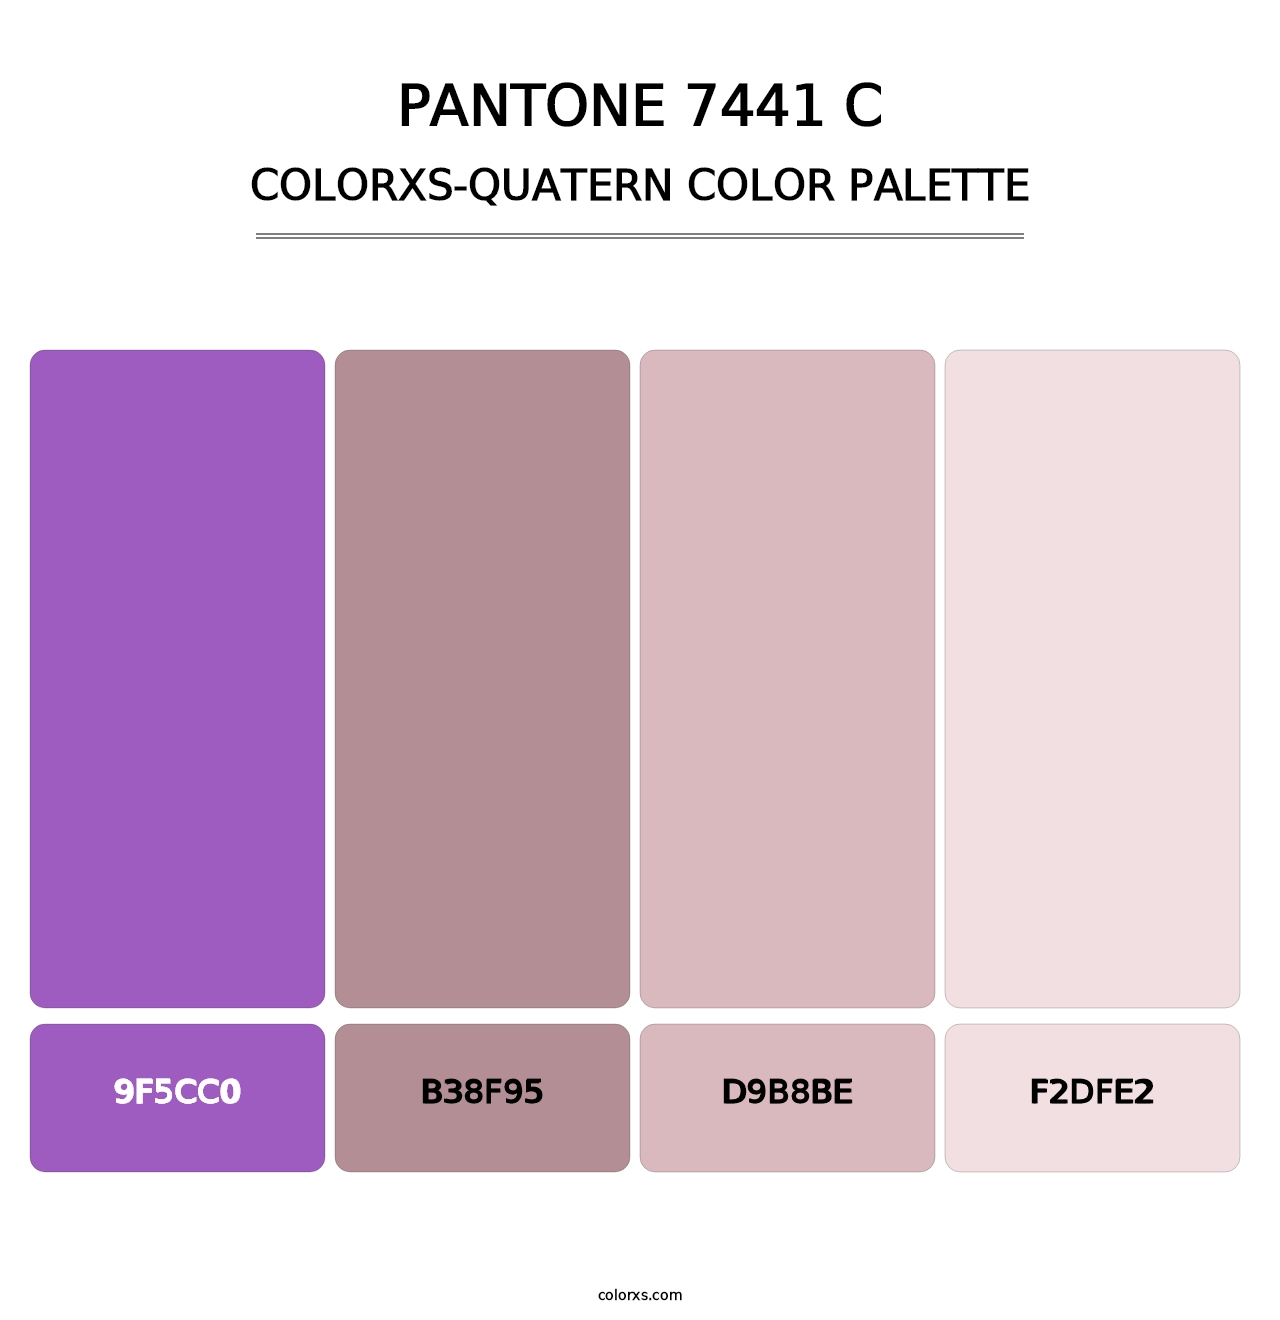 PANTONE 7441 C - Colorxs Quatern Palette